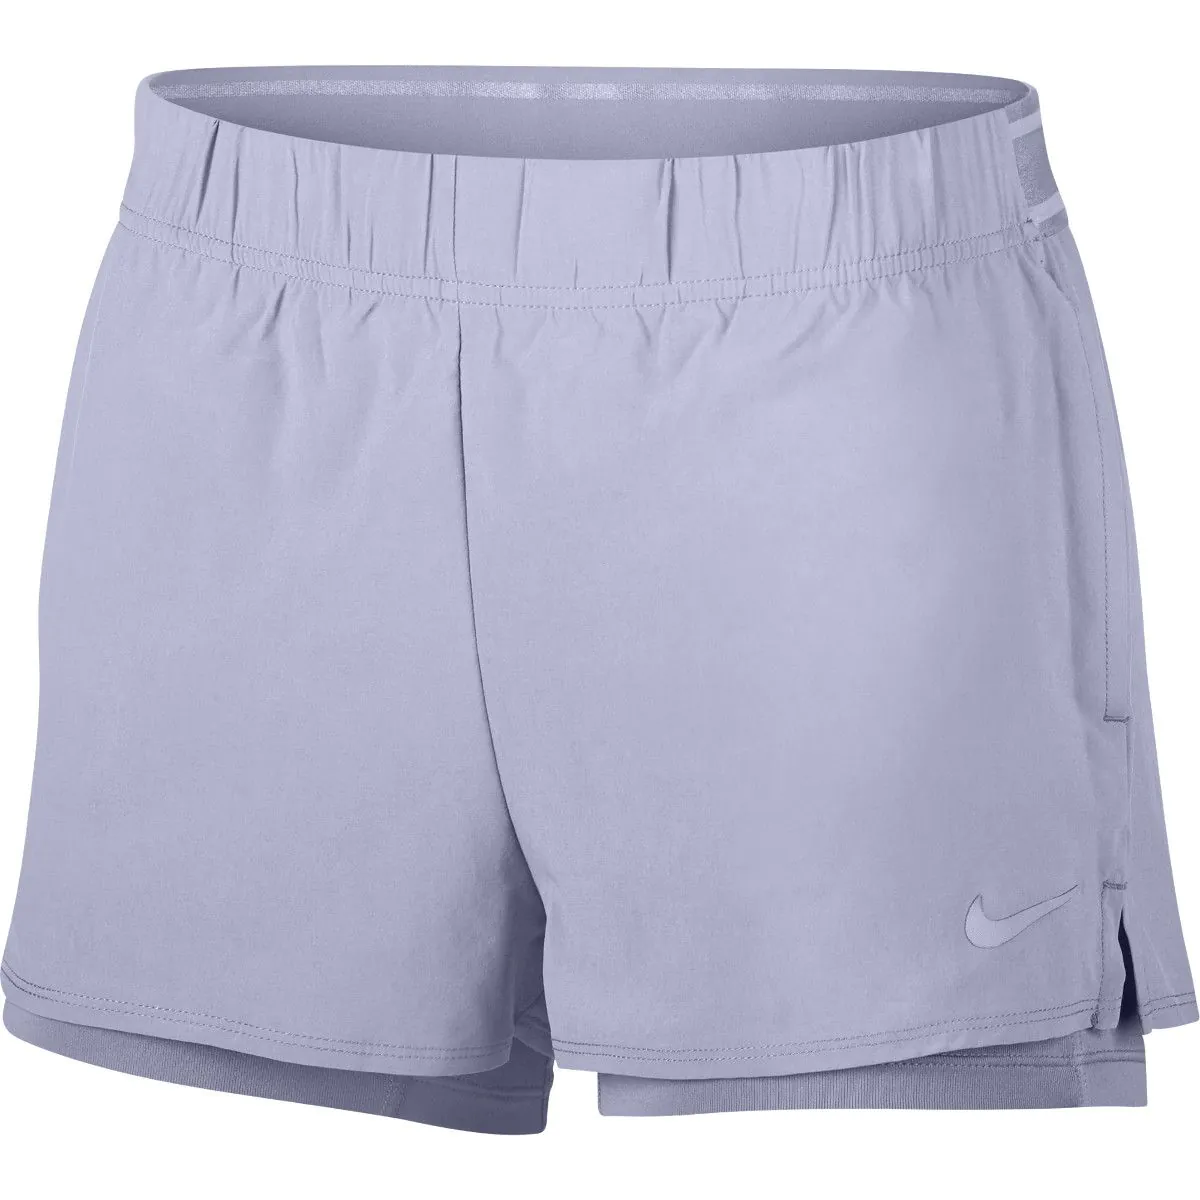 NikeCourt Flex Pure Women's Tennis Short 939312-508